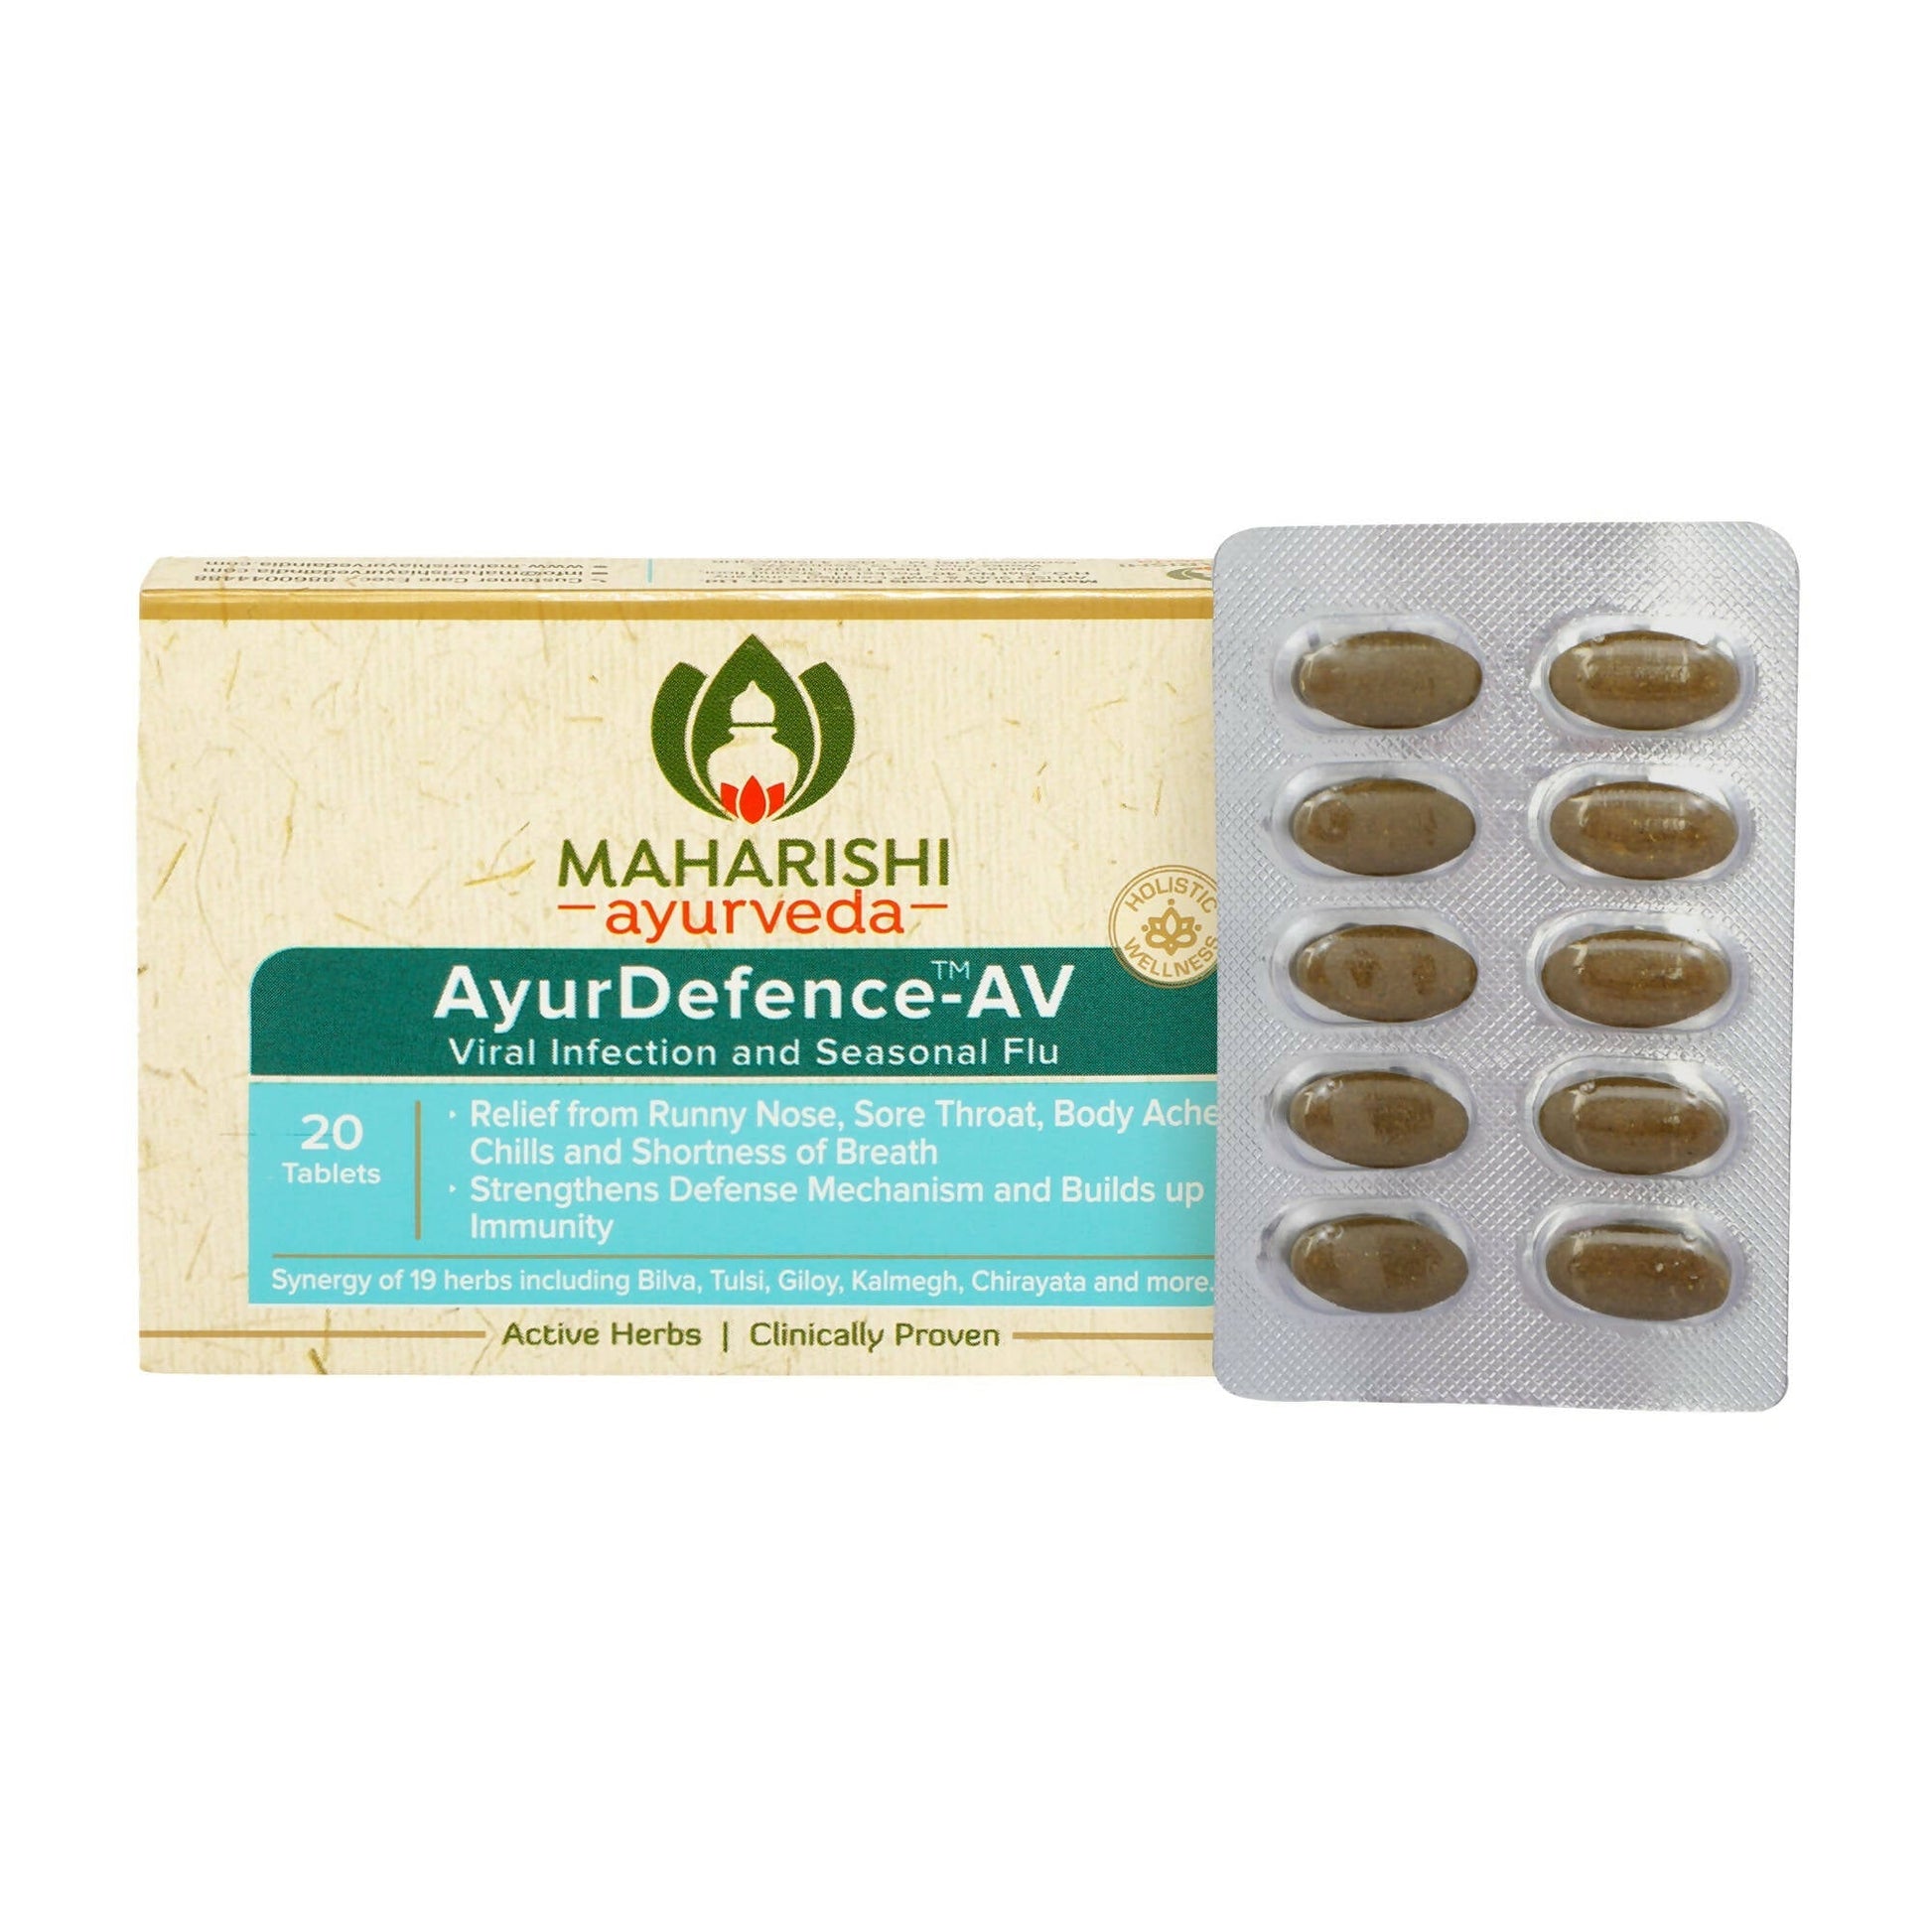 Maharishi Ayurveda AyurDefence-AV Tablets - BUDEN